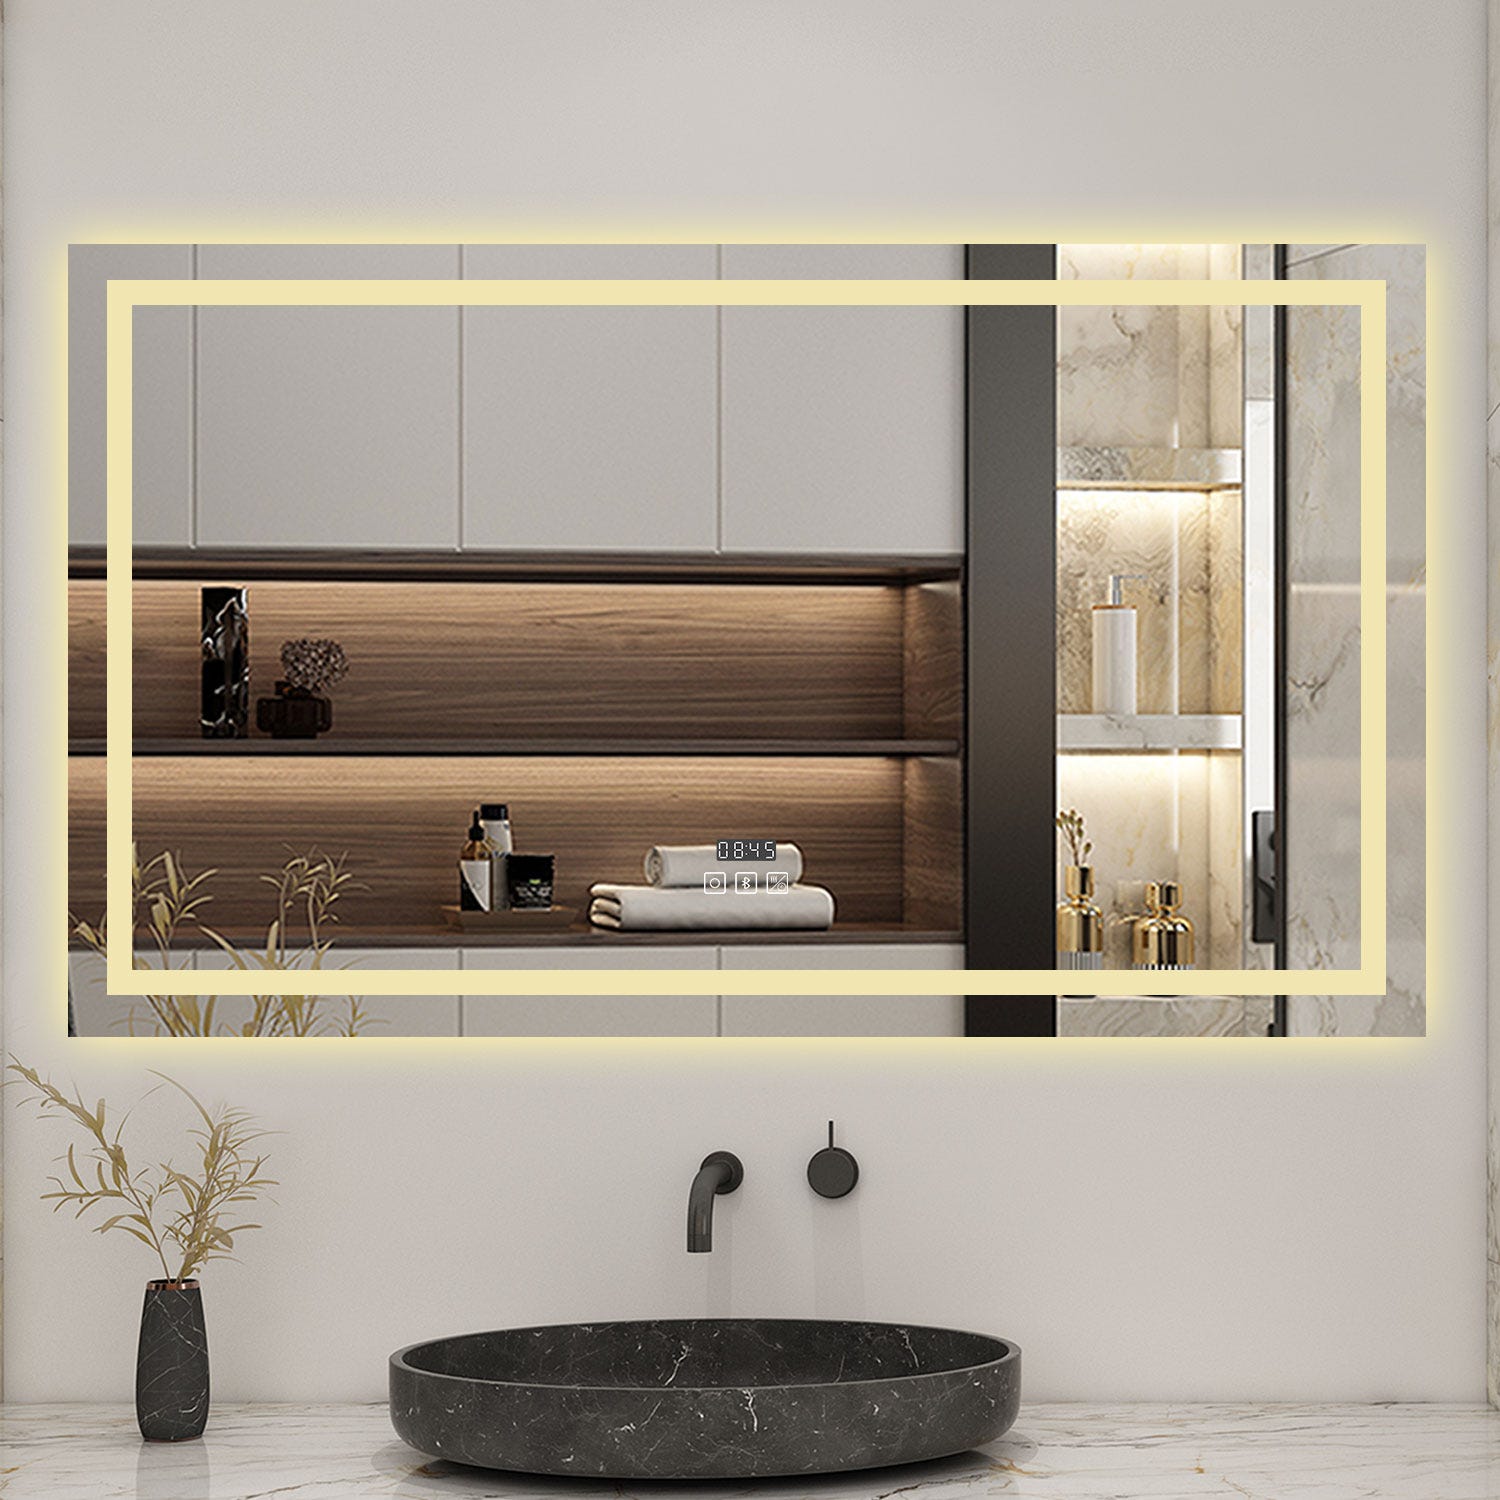 AICA Miroir lumineux Horloge + bluetooth + tricolore + anti-buée 120x70cm salle de bain dimmable,mémoire,tactile,led 2